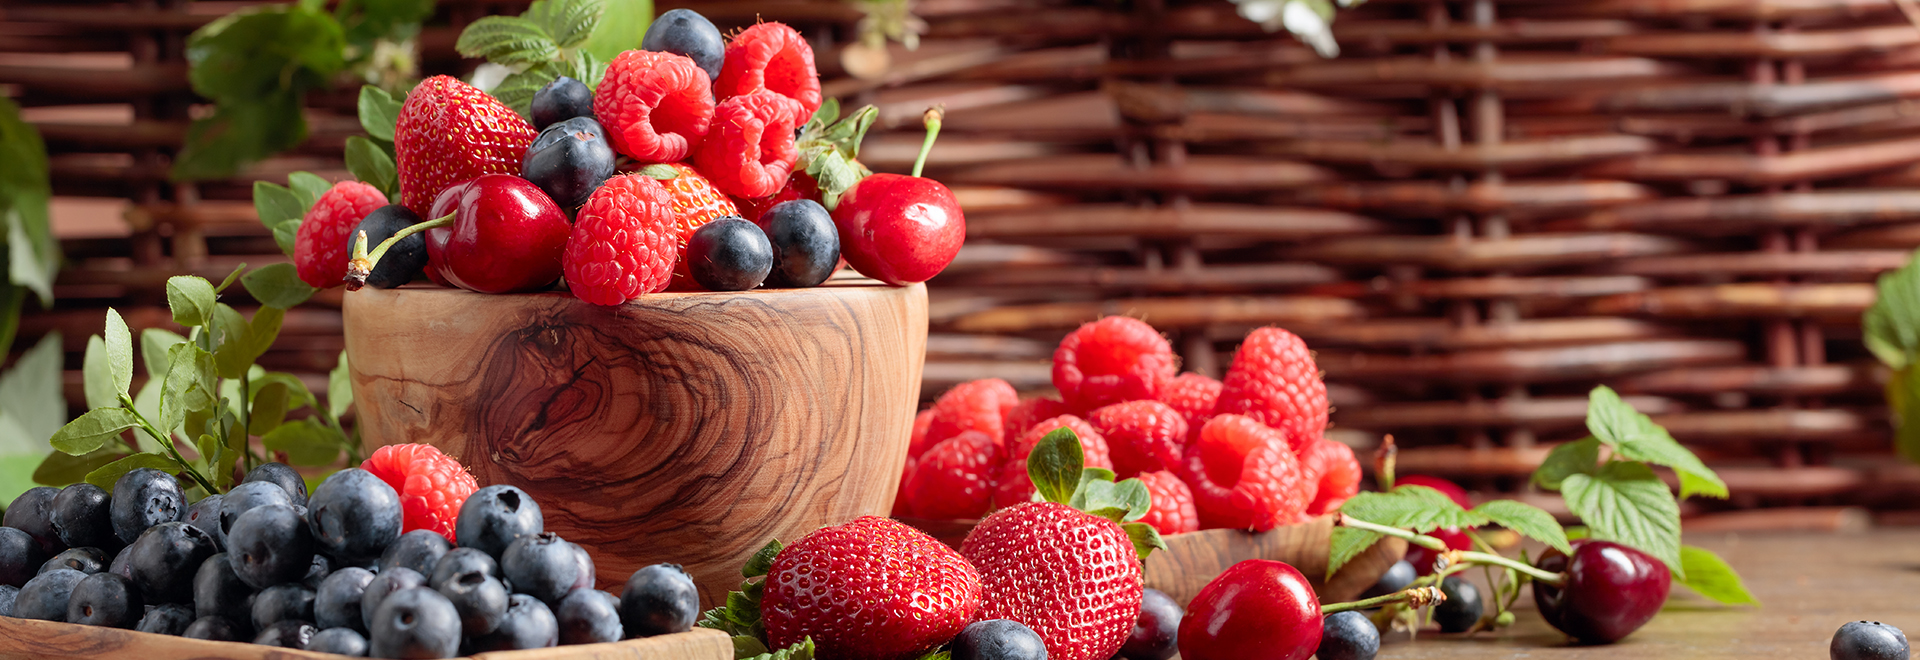 8-health-benefits-of-berries